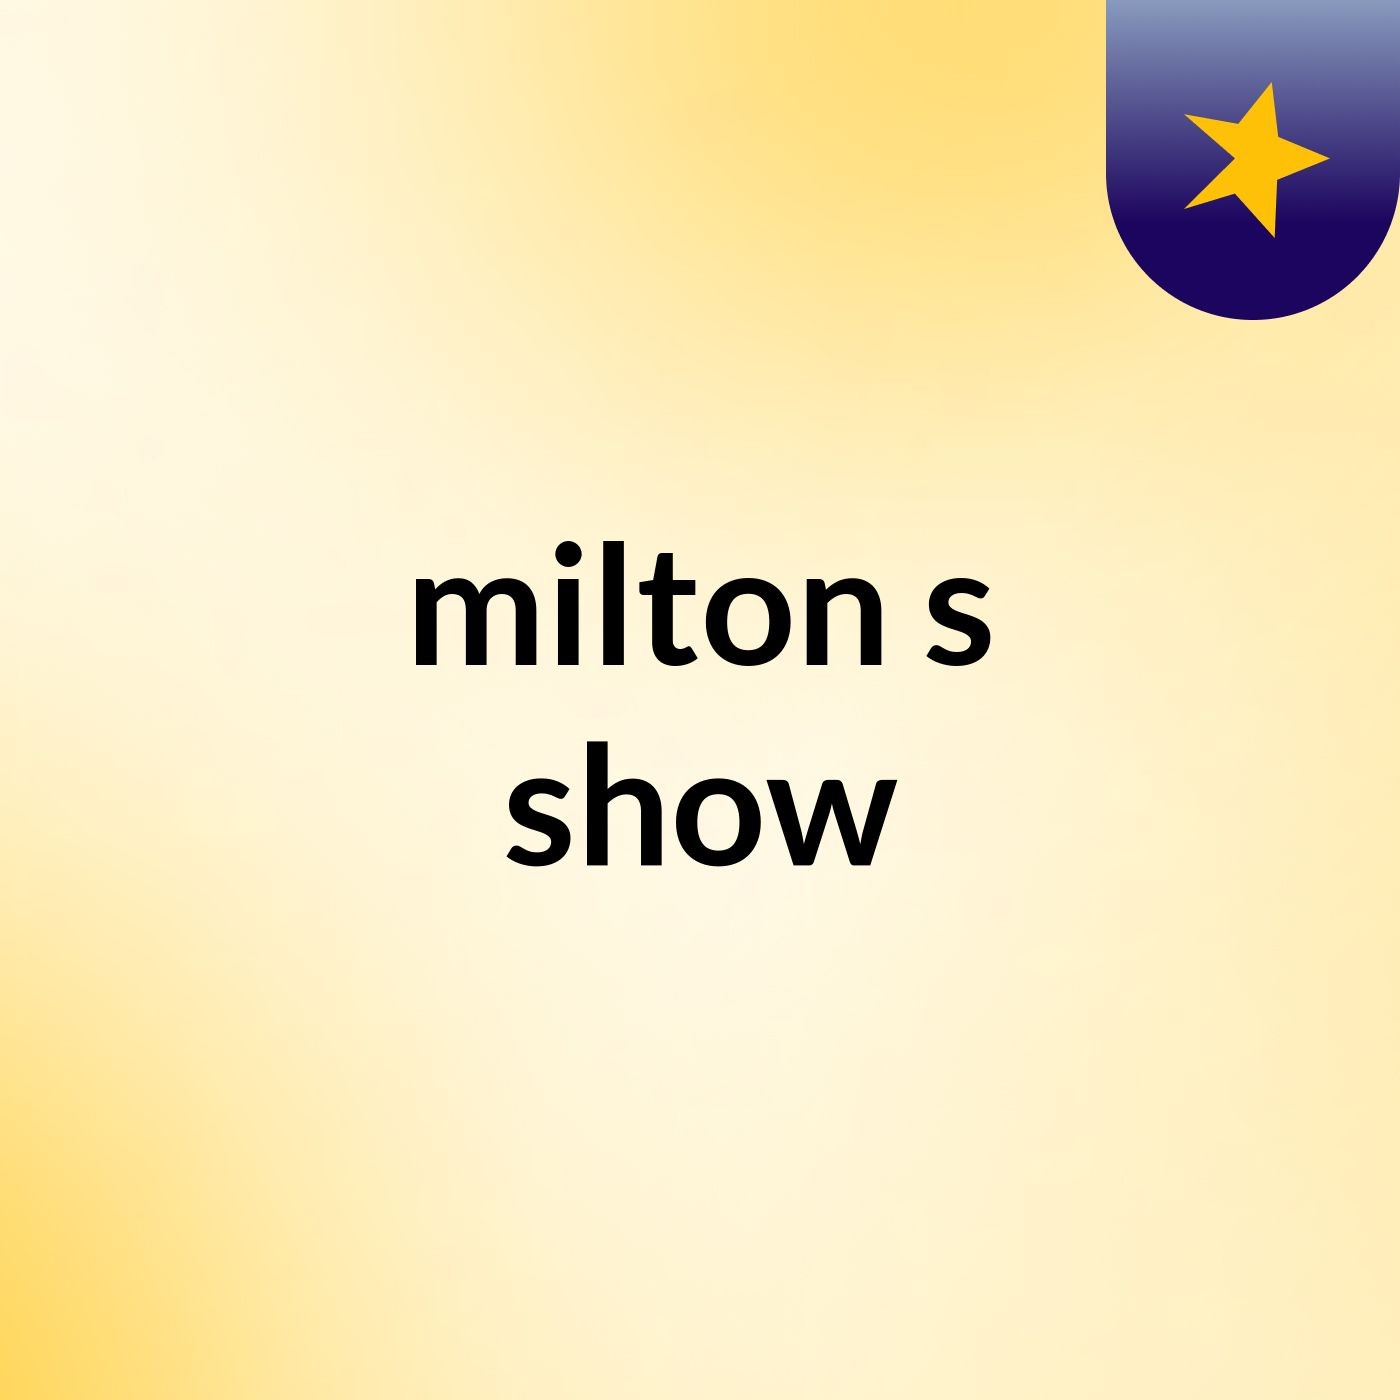 milton's show